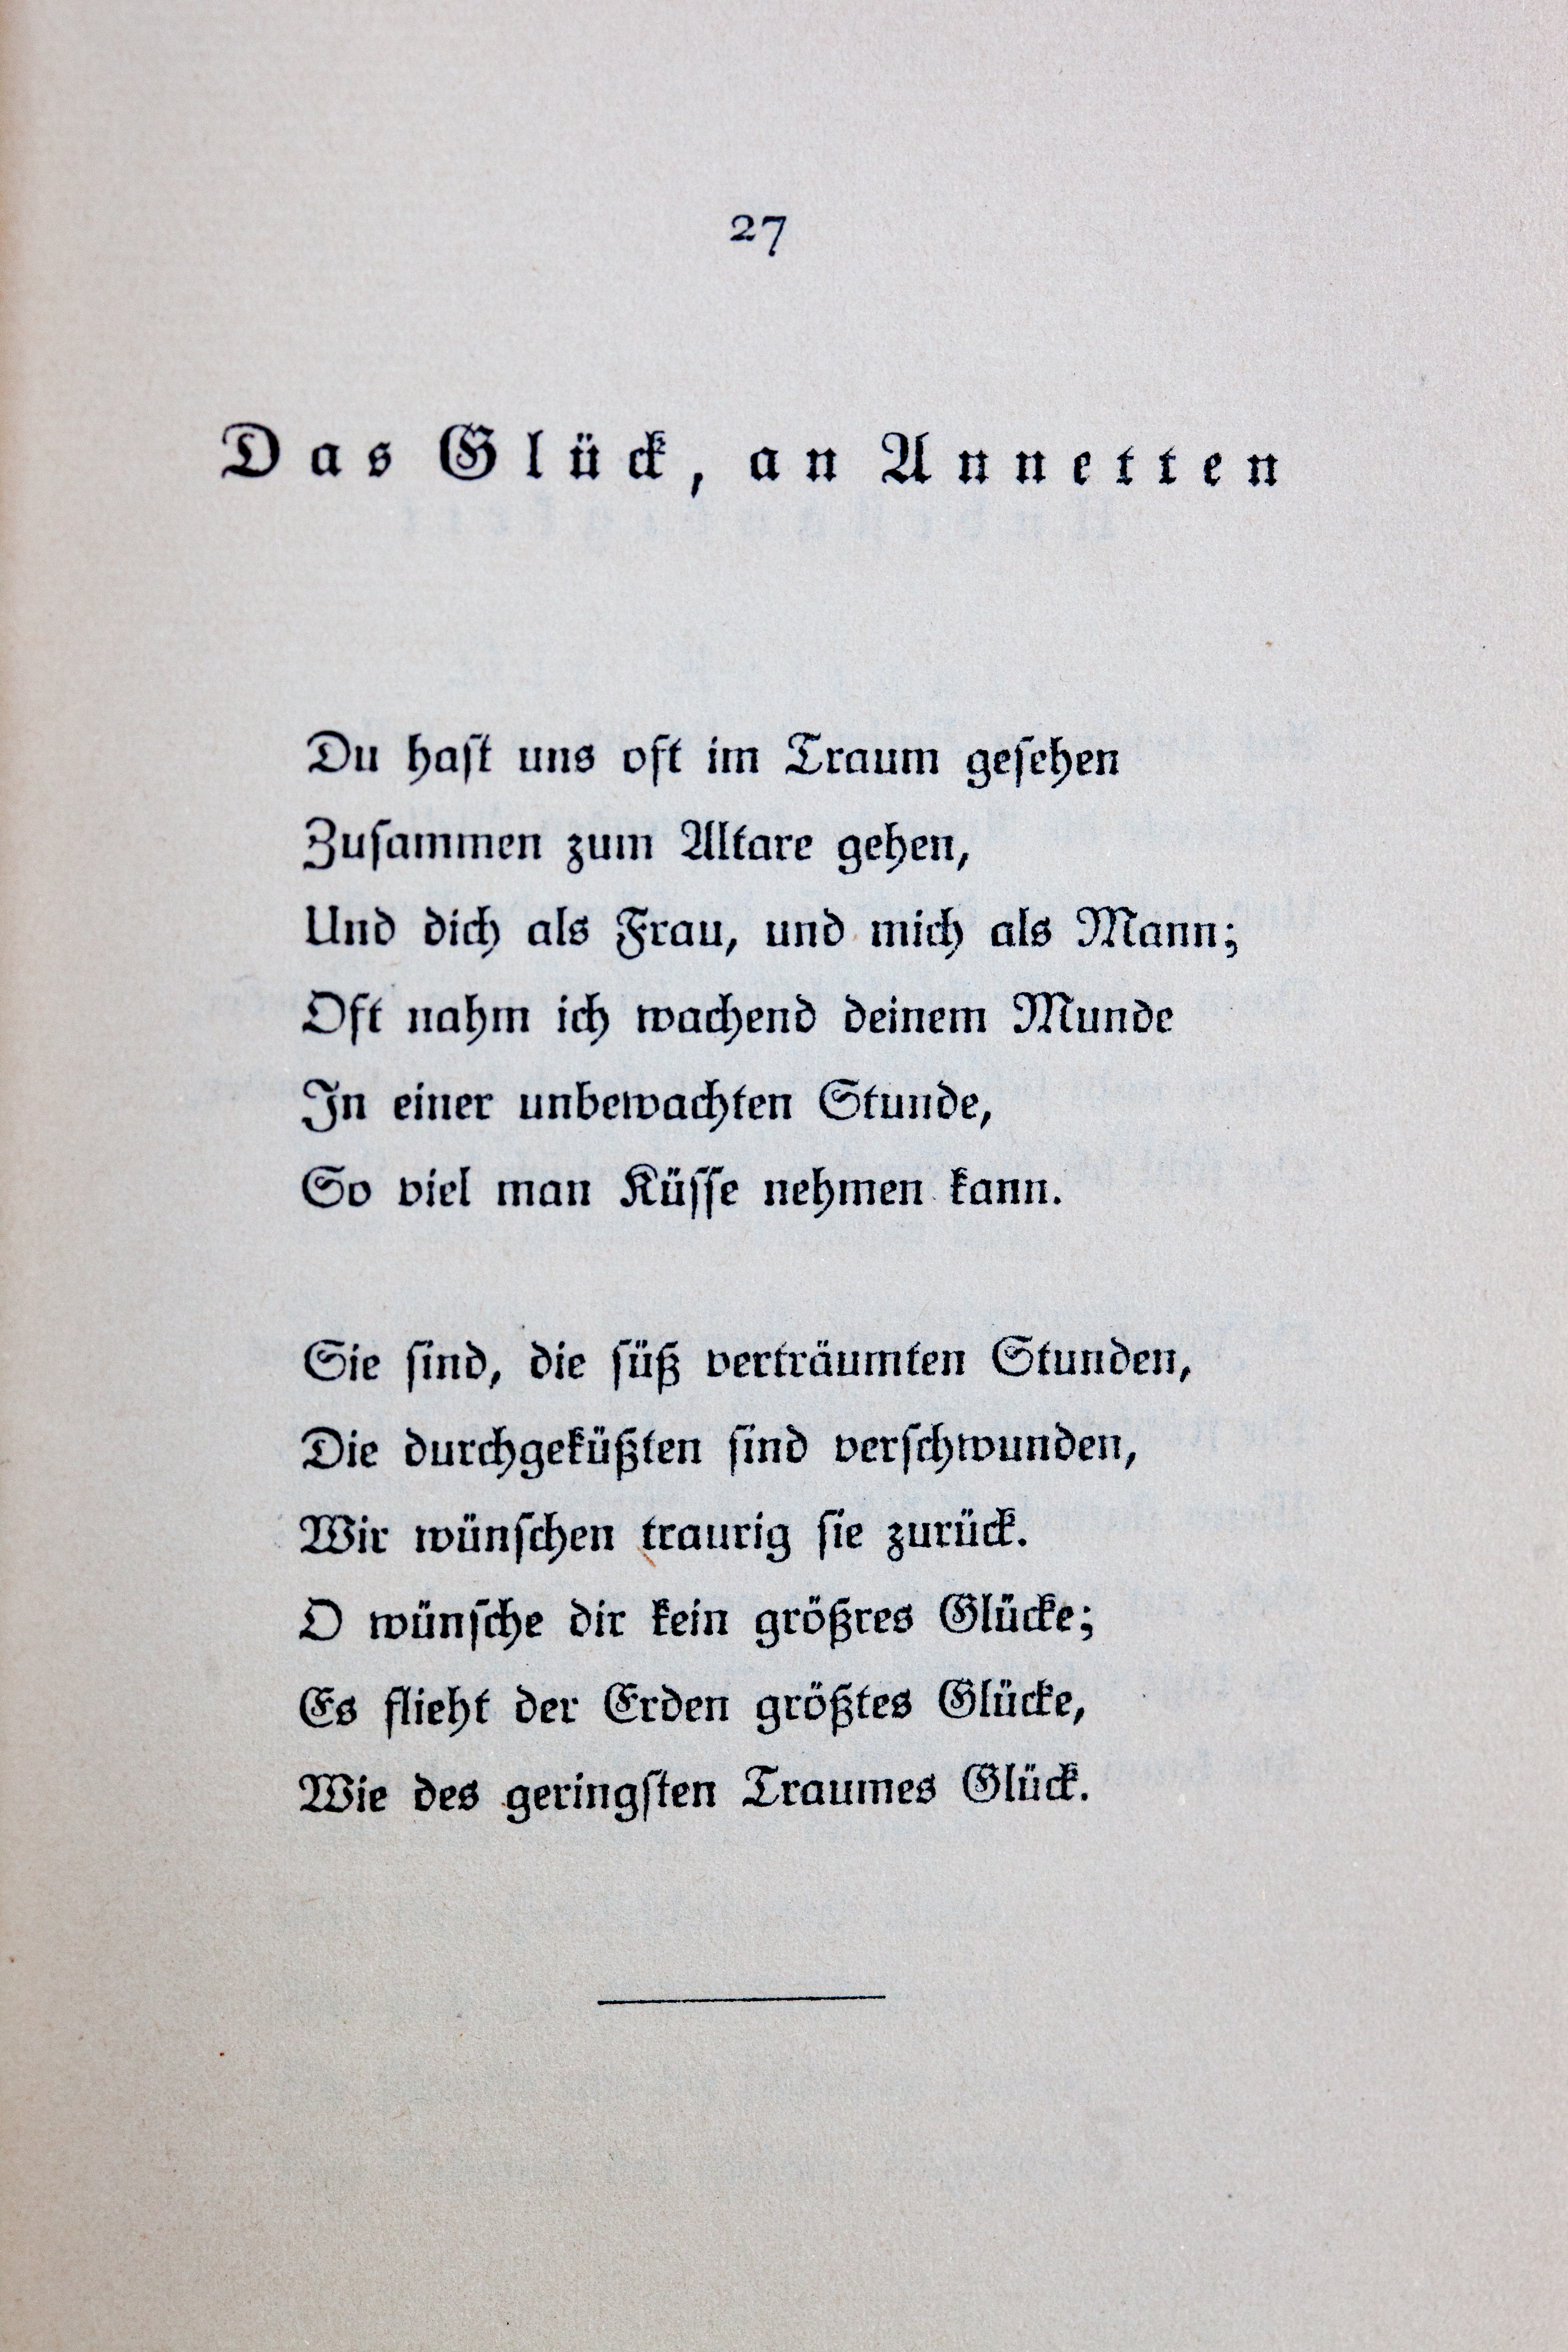 Goethes Liebesgedichte im Insel Verlag-027.jpg. 